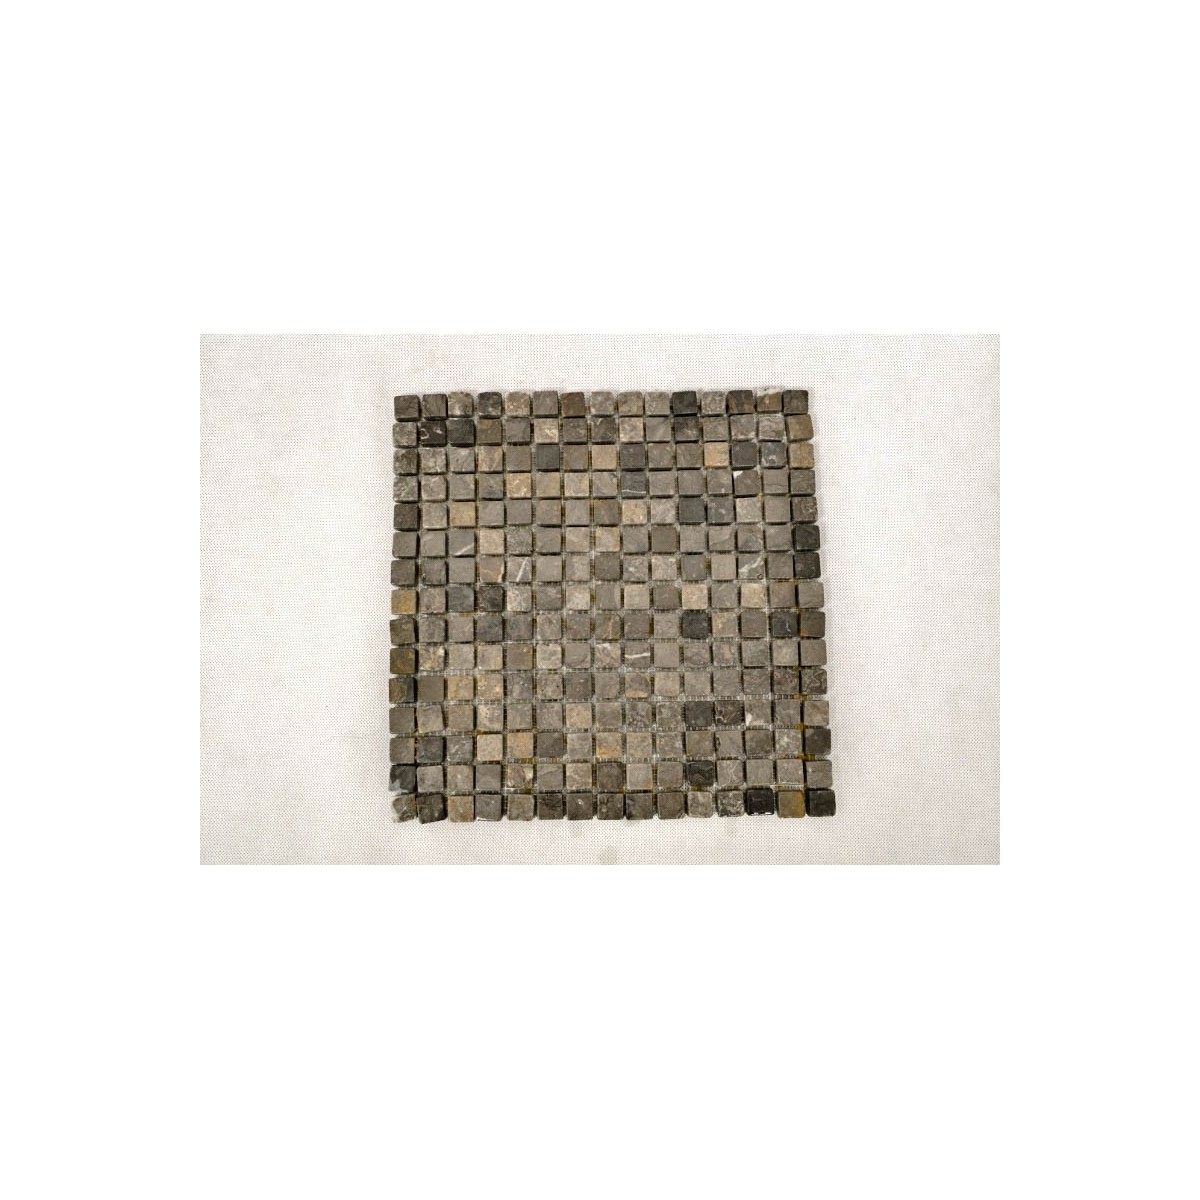 KOSTKA:  * BLACK 1,7x1,7 mozaika kamienna na siatce INDUSTONE